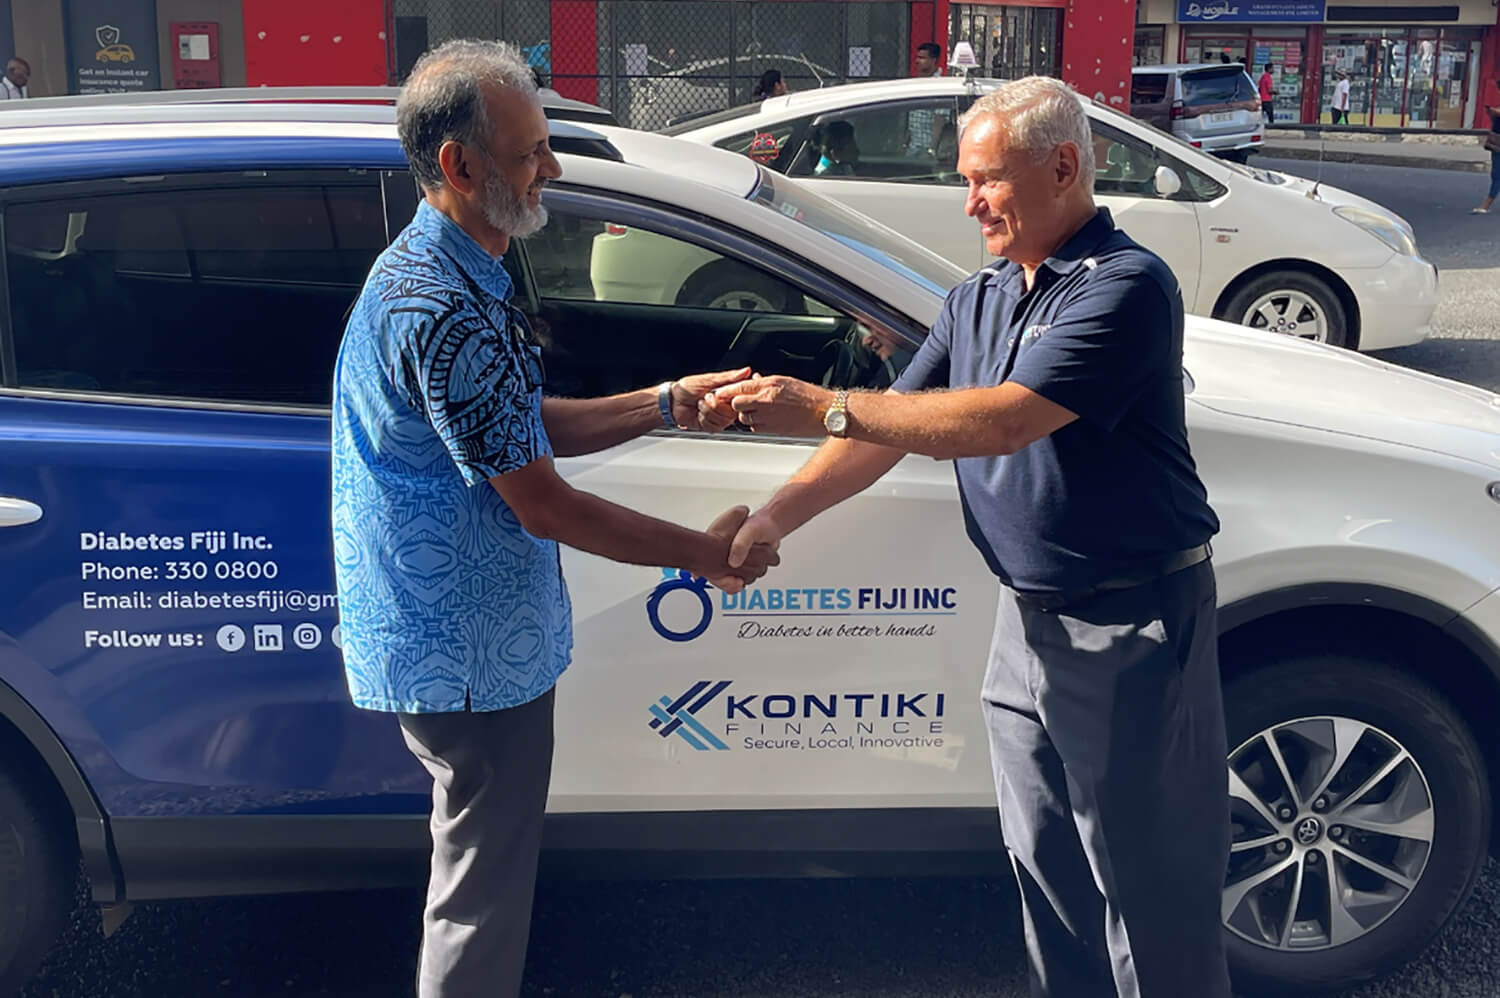 Kontiki Finance donates a 4WD vehicle to Diabetes Fiji Inc